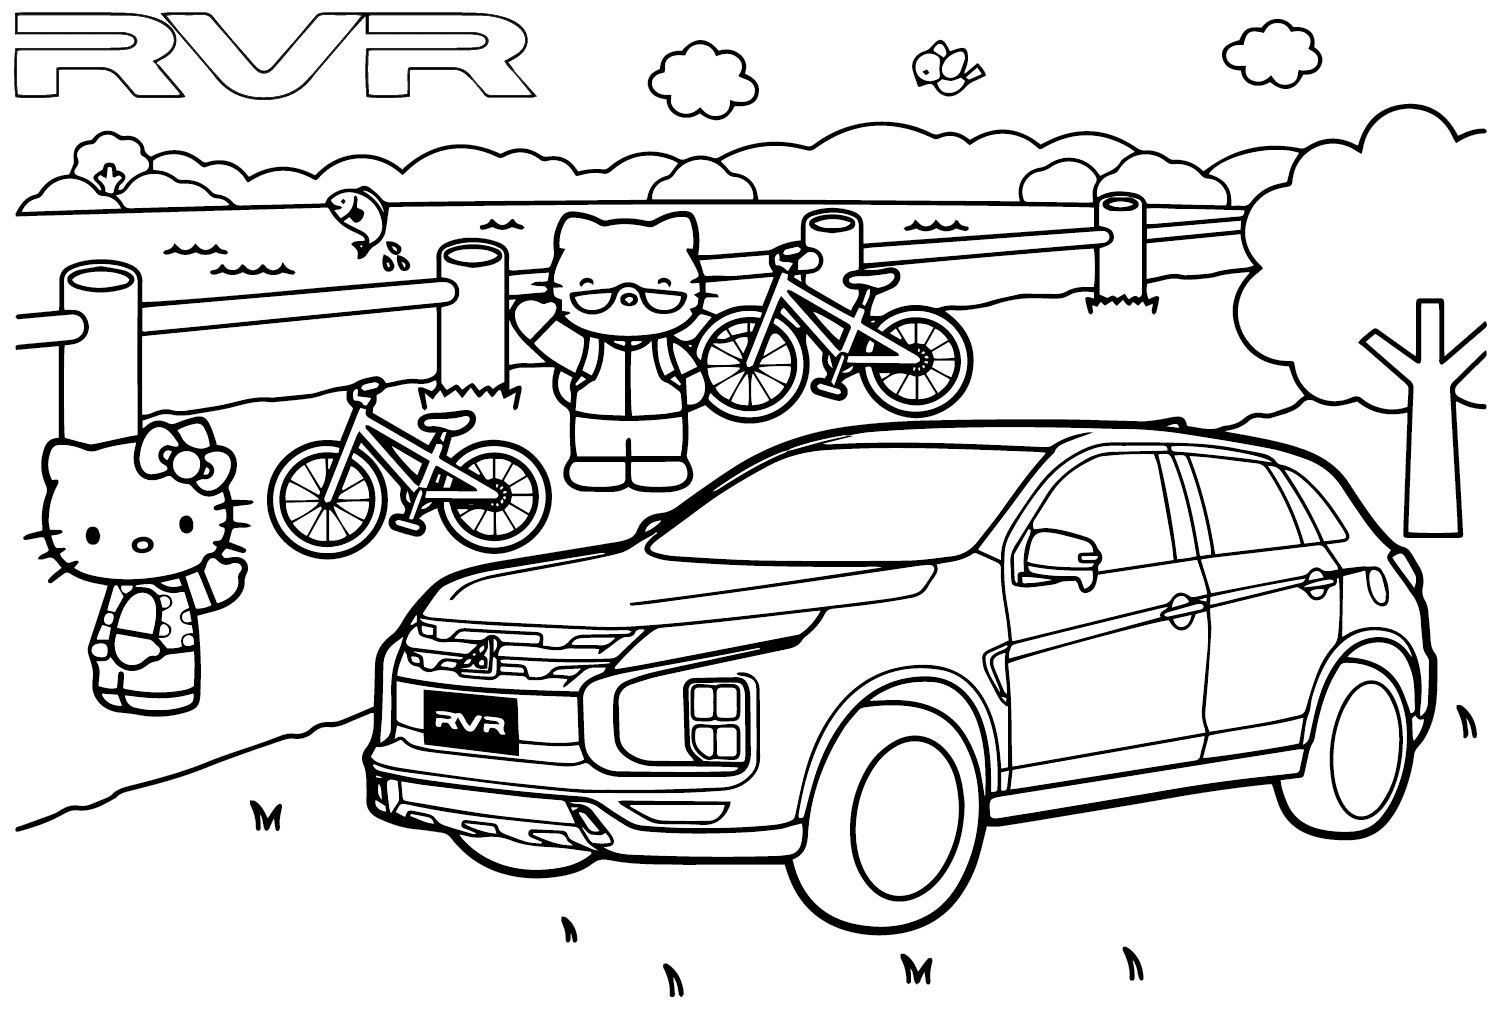 Mitsubishi RVR Coloring Page from Mitsubishi Motors